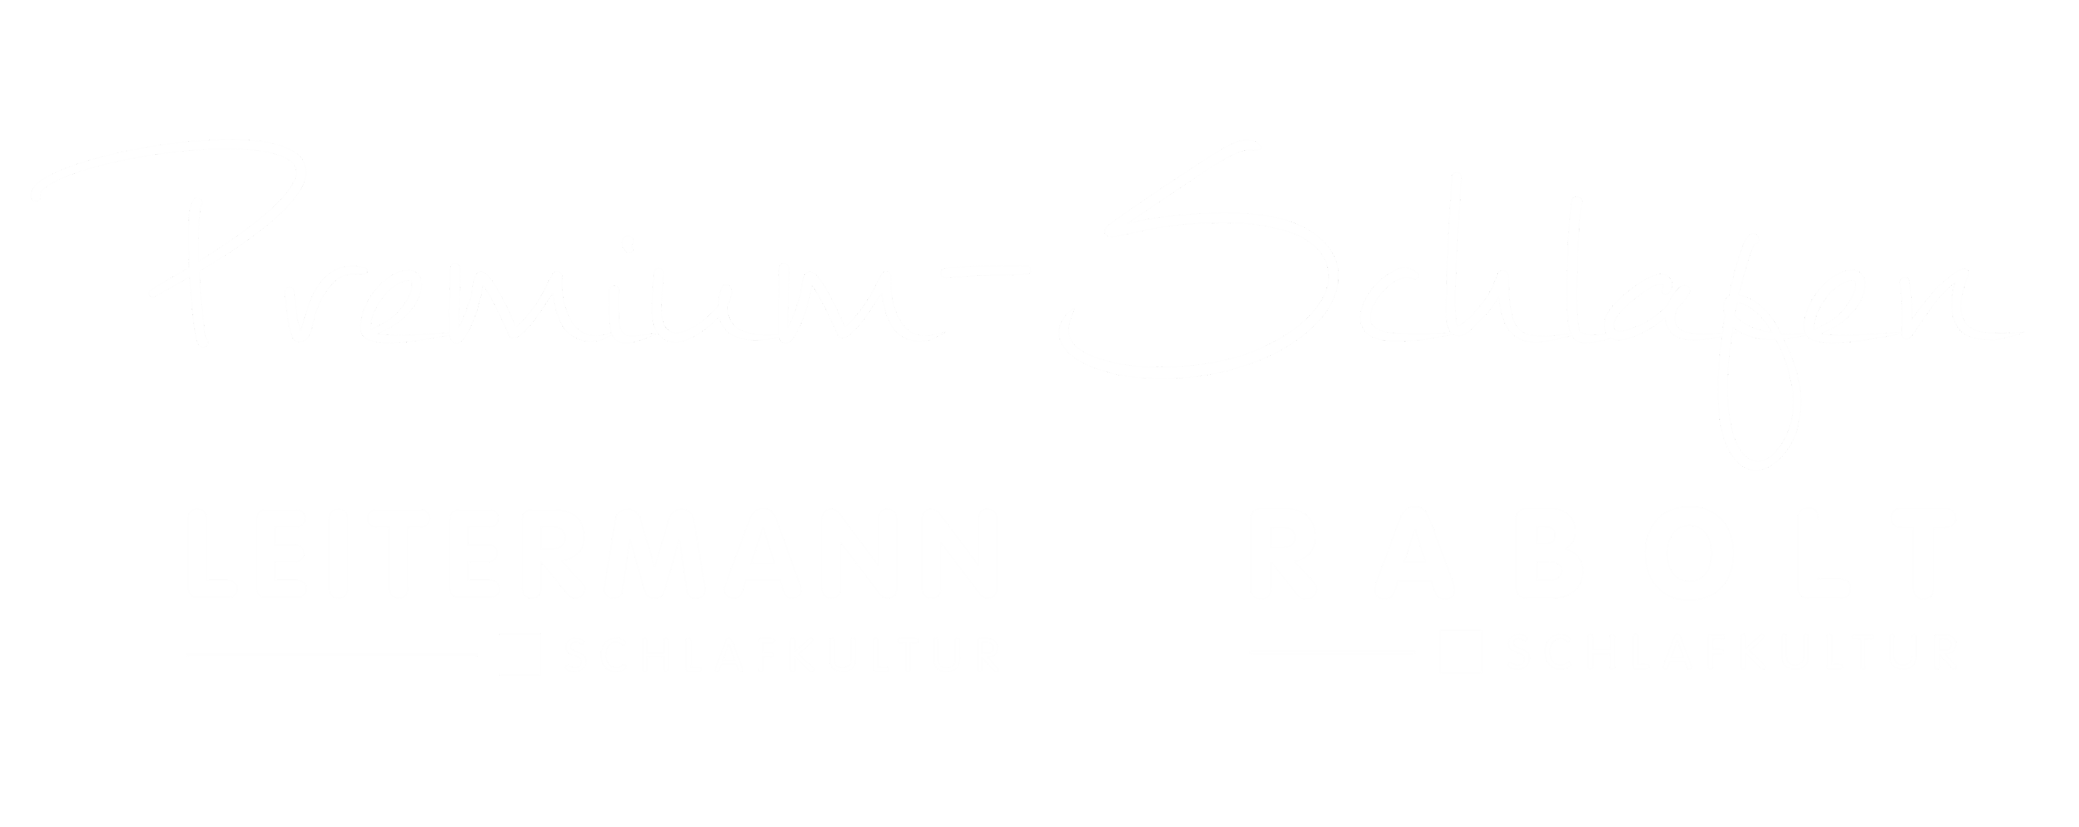 Logo mit Schriftzug Premium-Schlafen in weißer Schrift auf transparentem Hintergrund - Betten Leitermann - Leitermann Schlafkultur und Betten Rabolt - Rabolt Schlafkultur